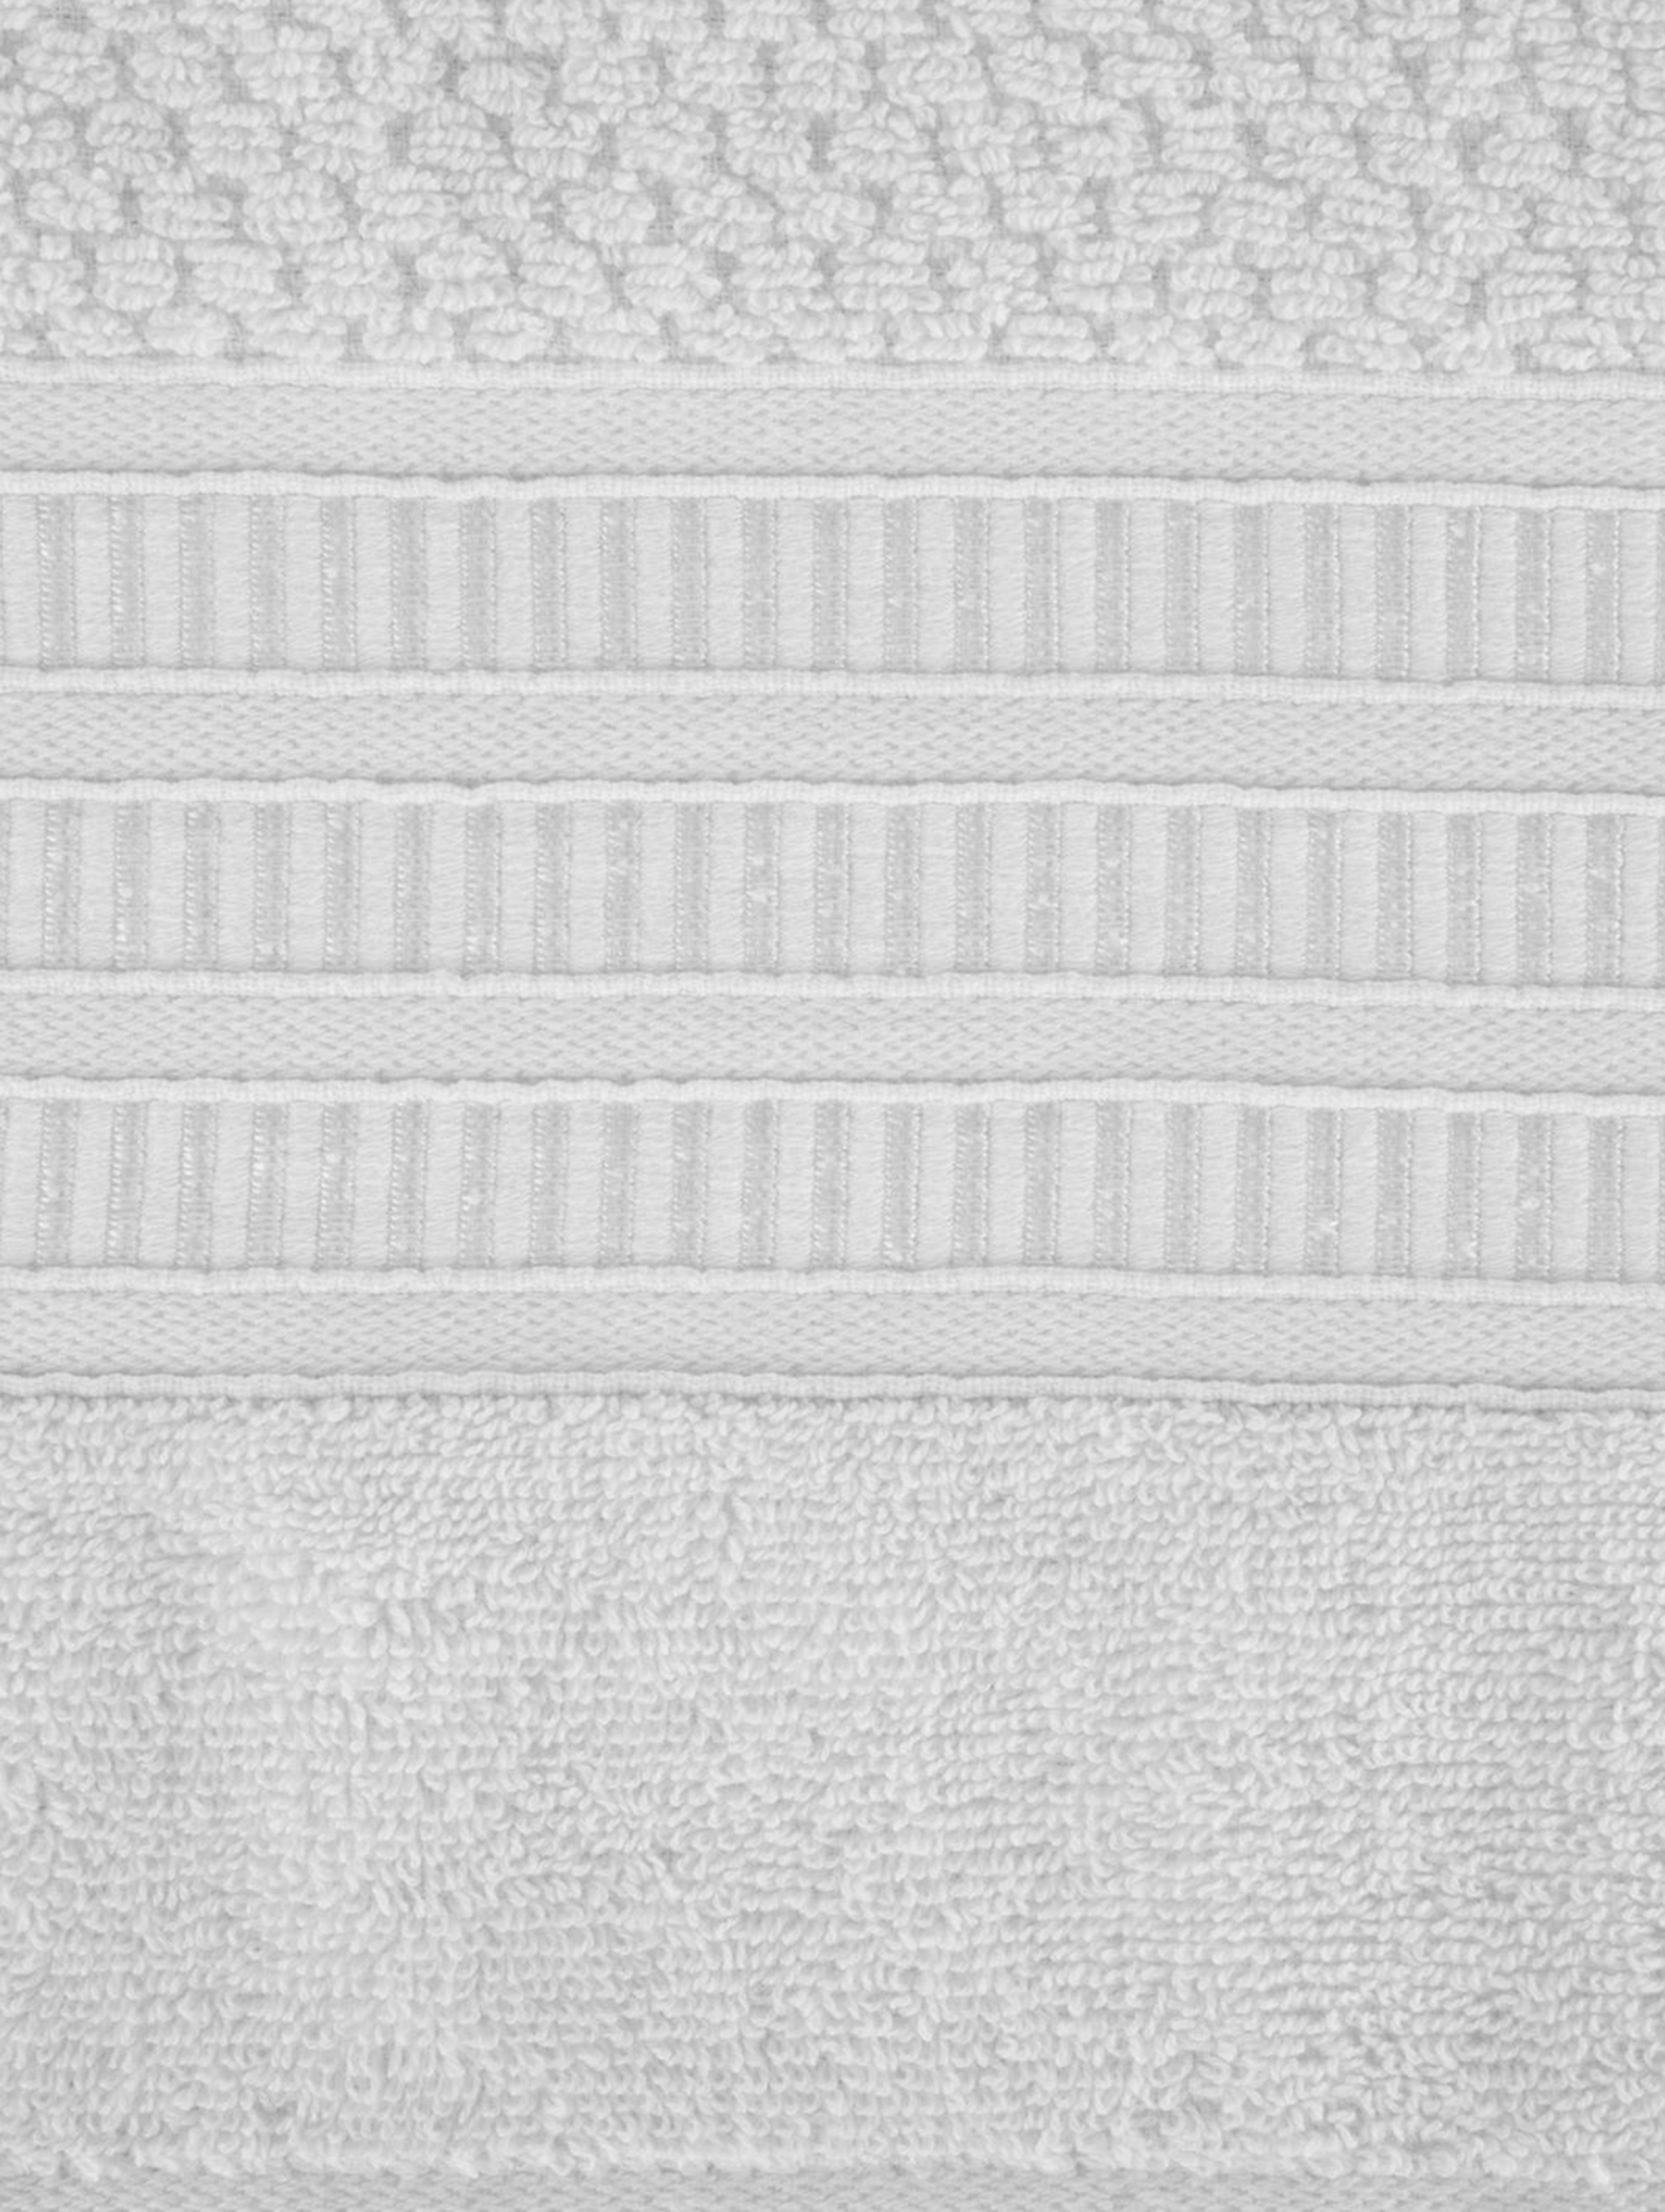 Ręcznik rosita (01) 50x90 cm biały